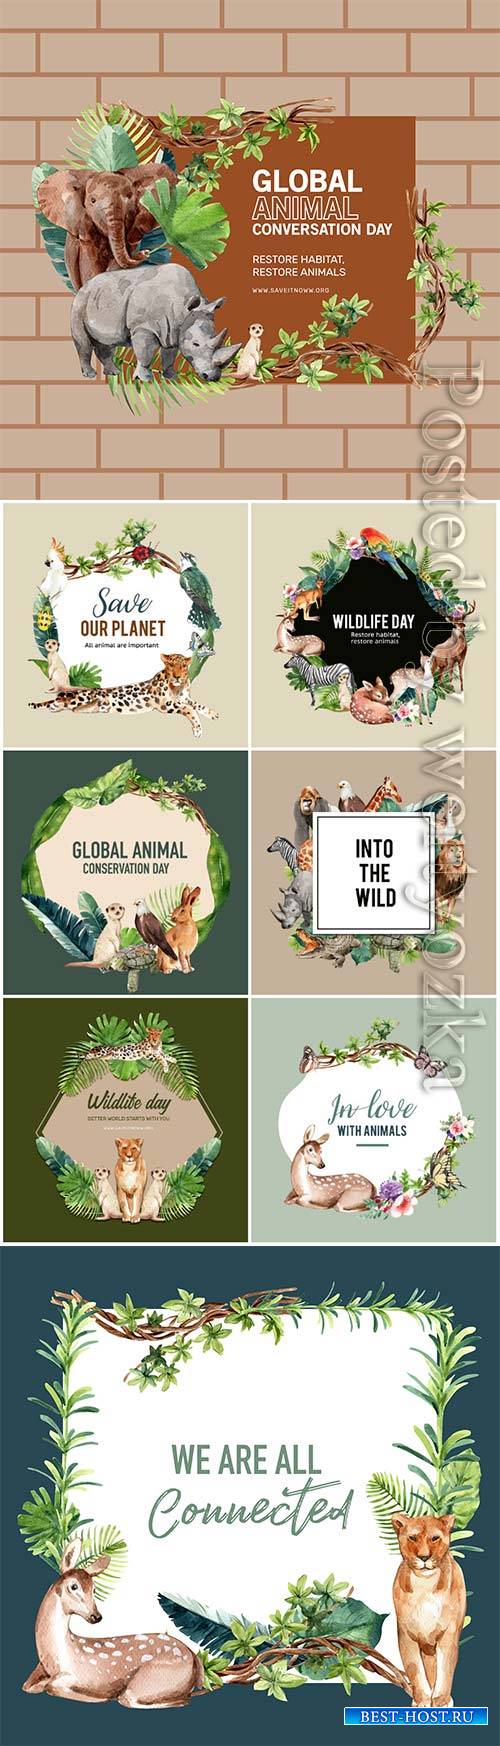 Zoo wreath design with eagle, gorilla, giraffe, rhino watercolor illustrati ...